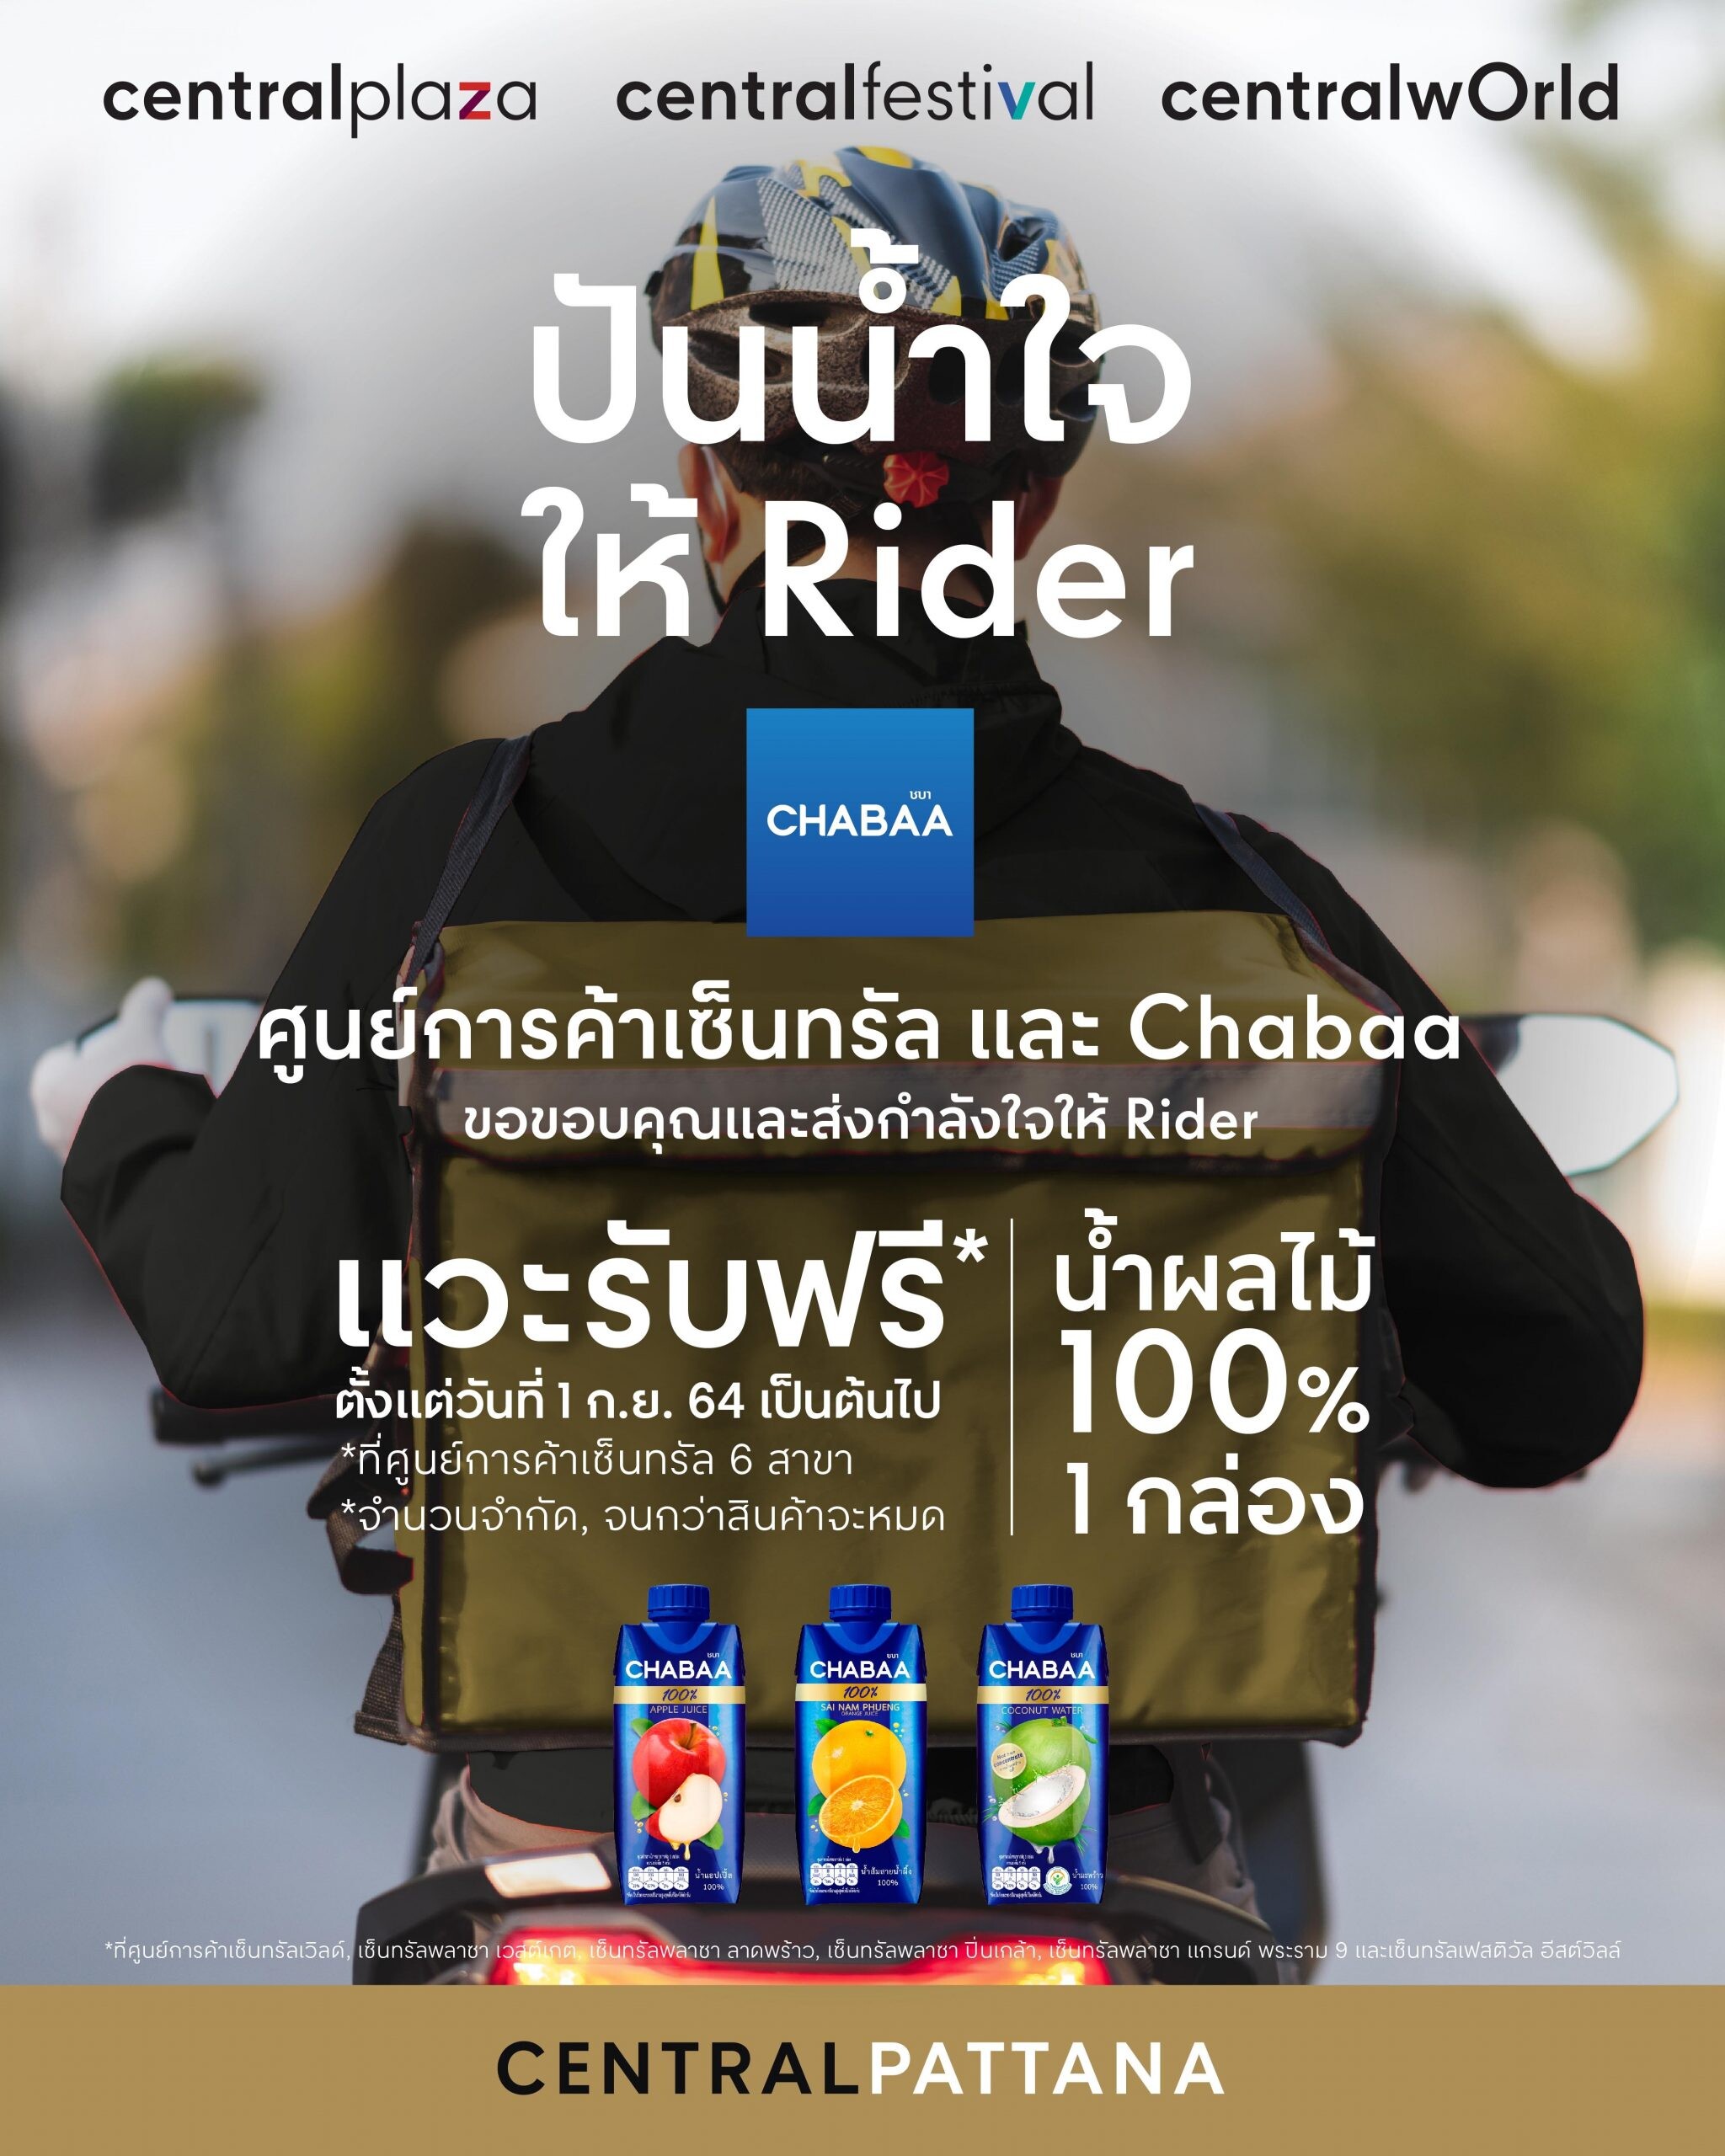 เพราะ Rider ทุกคน คือ คนสำคัญ แวะรับฟรี น้ำผลไม้แท้ 100% จาก Chabaa วันที่ 1 กันยายนนี้ เป็นต้นไป ที่ศูนย์การค้าเซ็นทรัล ทั้ง 6 สาขา ทั่วกทม.